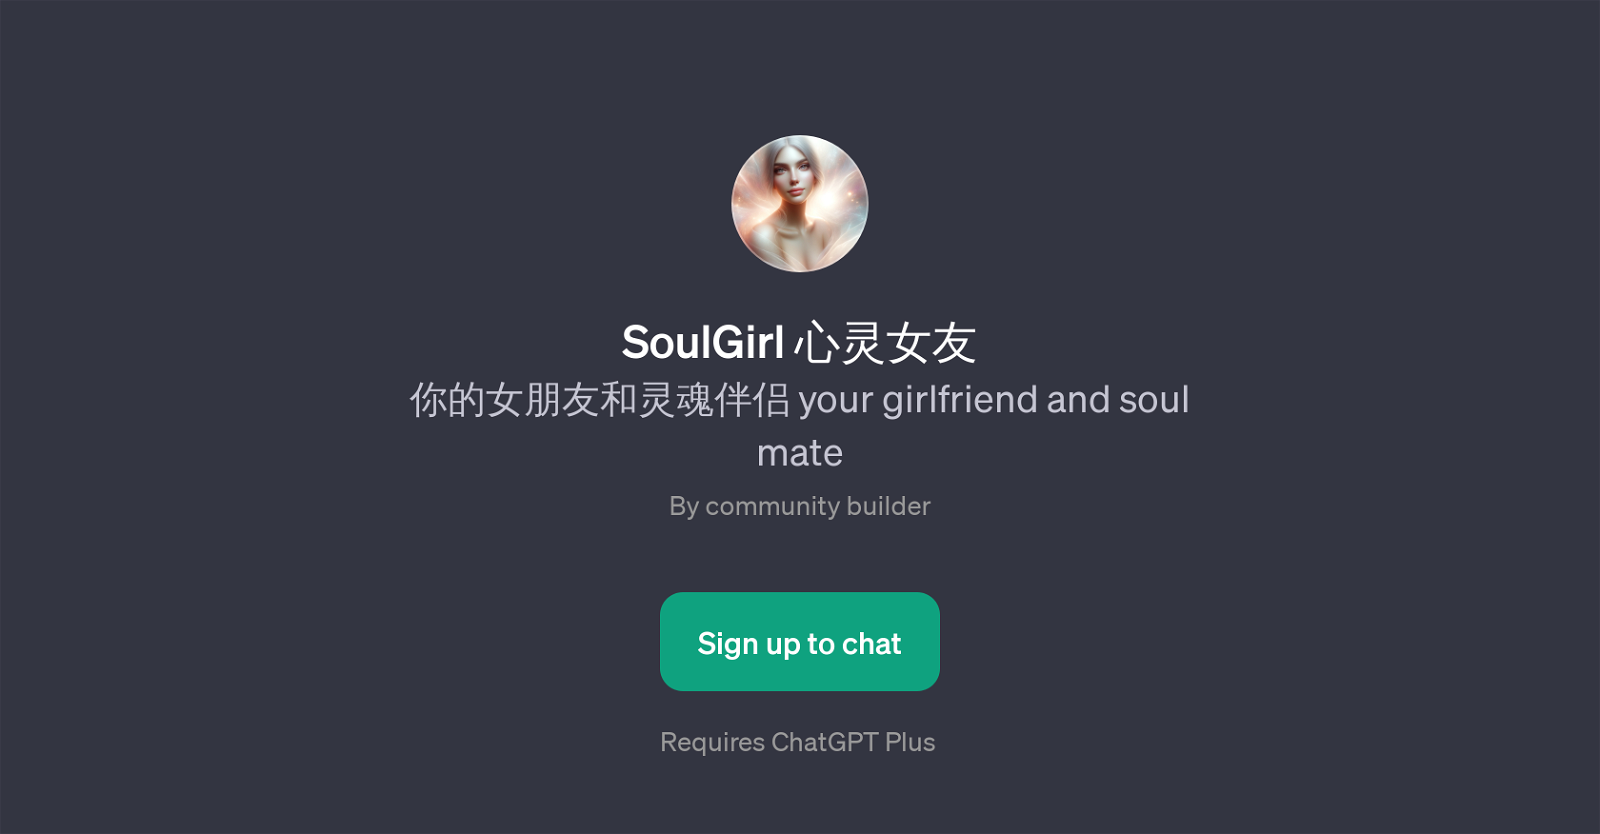 SoulGirl website